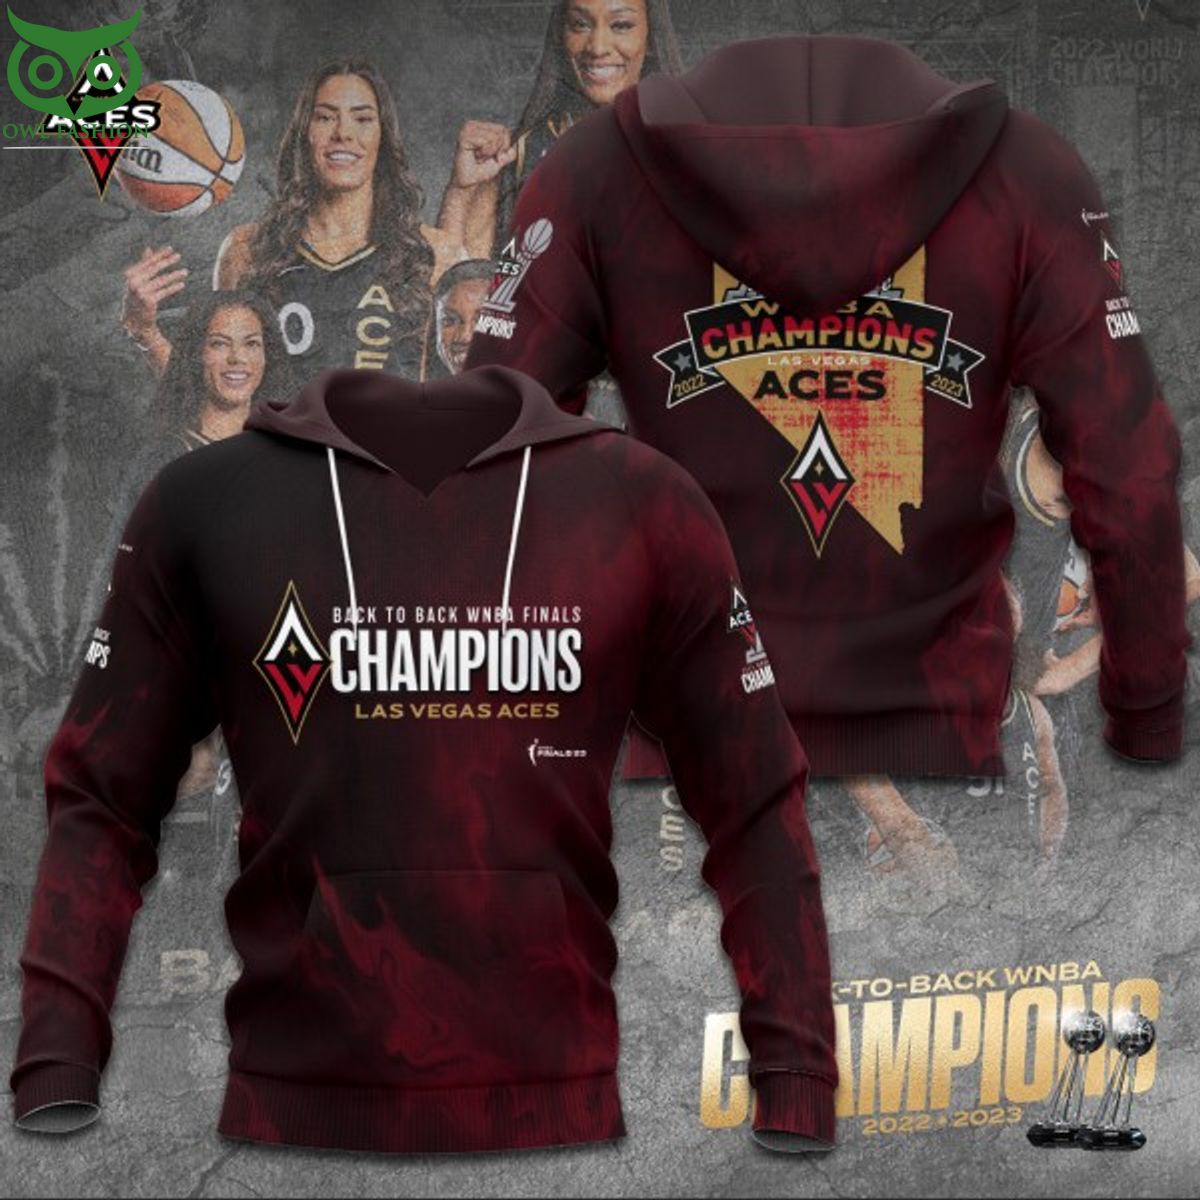 Las Vegas Aces 2023 WNBA Finals Champions 3d shirt hoodie - Owl